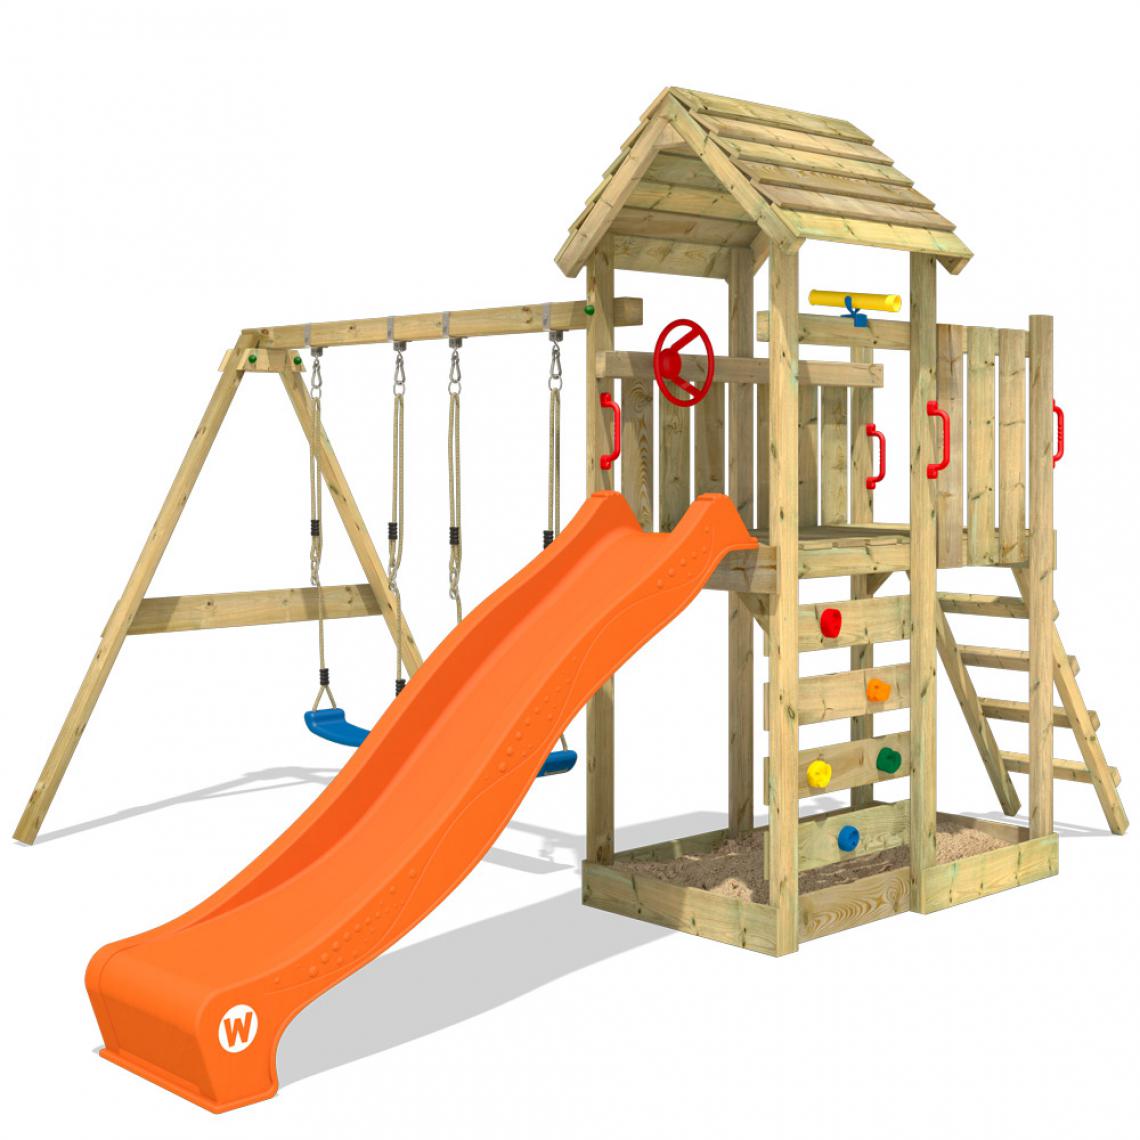 Wickey - Aire de jeux Portique bois MultiFlyer toit en bois avec balançoire et toboggan orange Maison enfant extérieure avec bac à sable - Aire de jeux